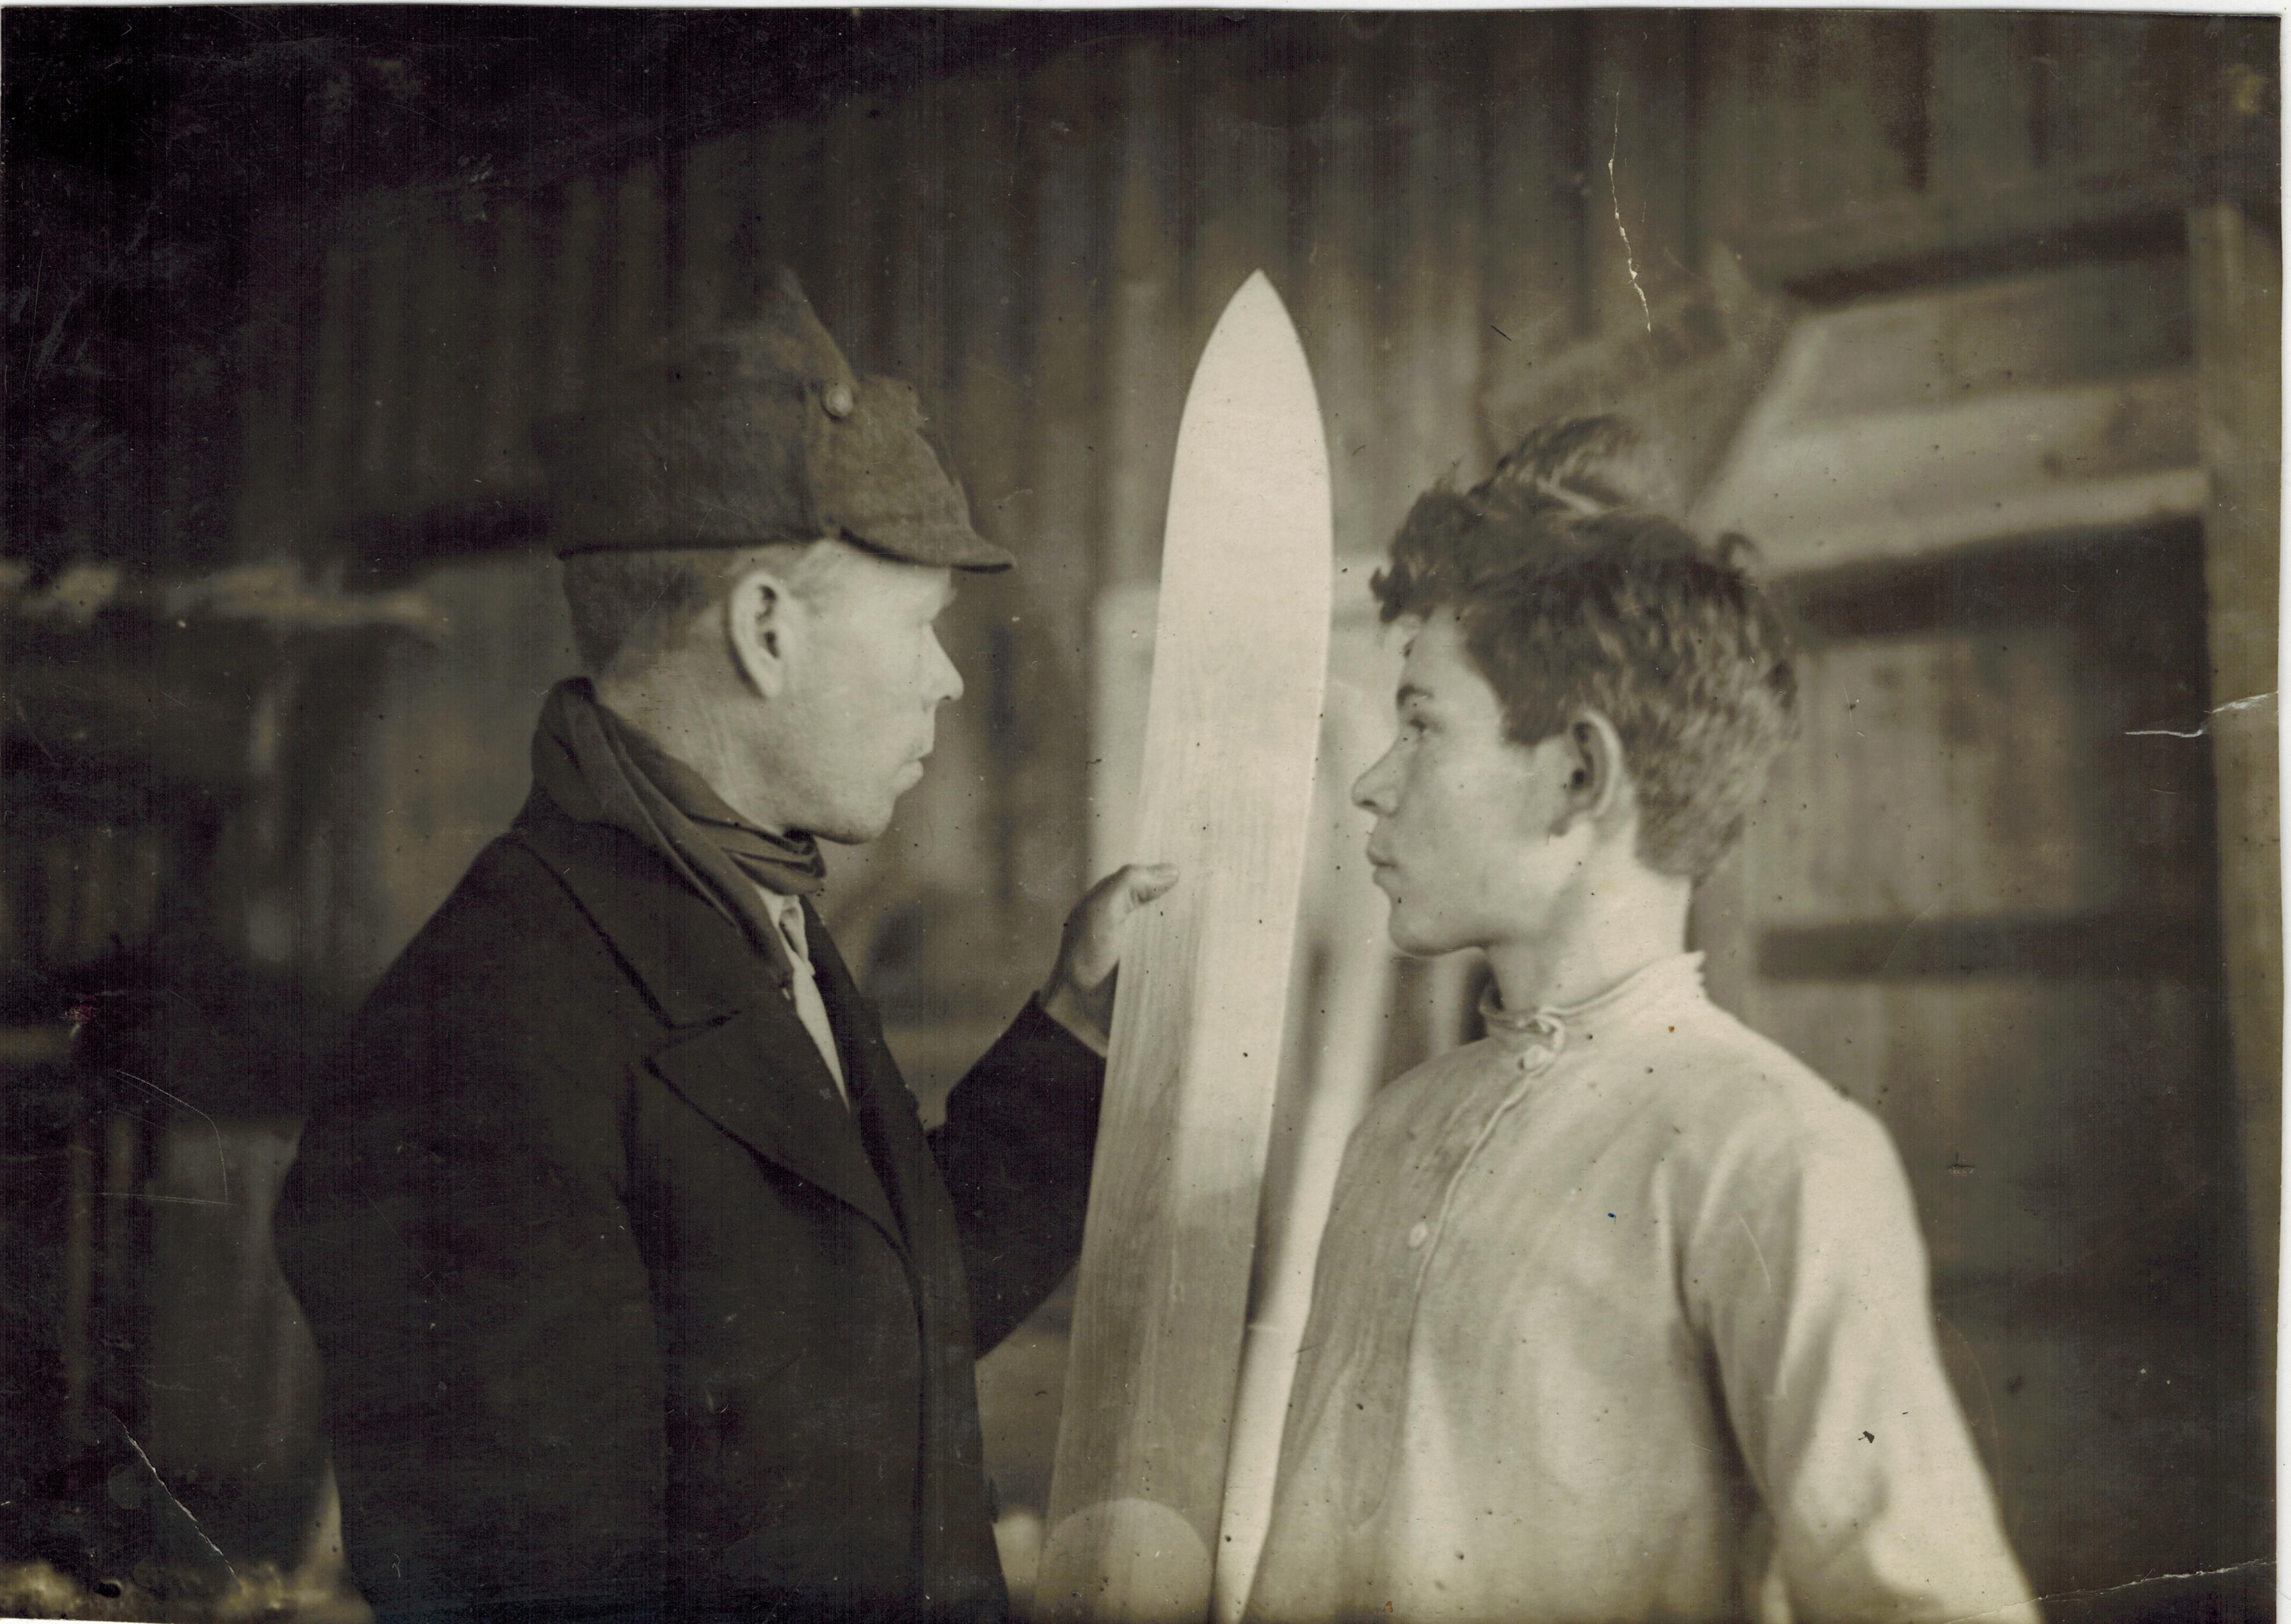 Канов А.М., Полканов А.К. на производстве лыж для фронта. 1942 год.